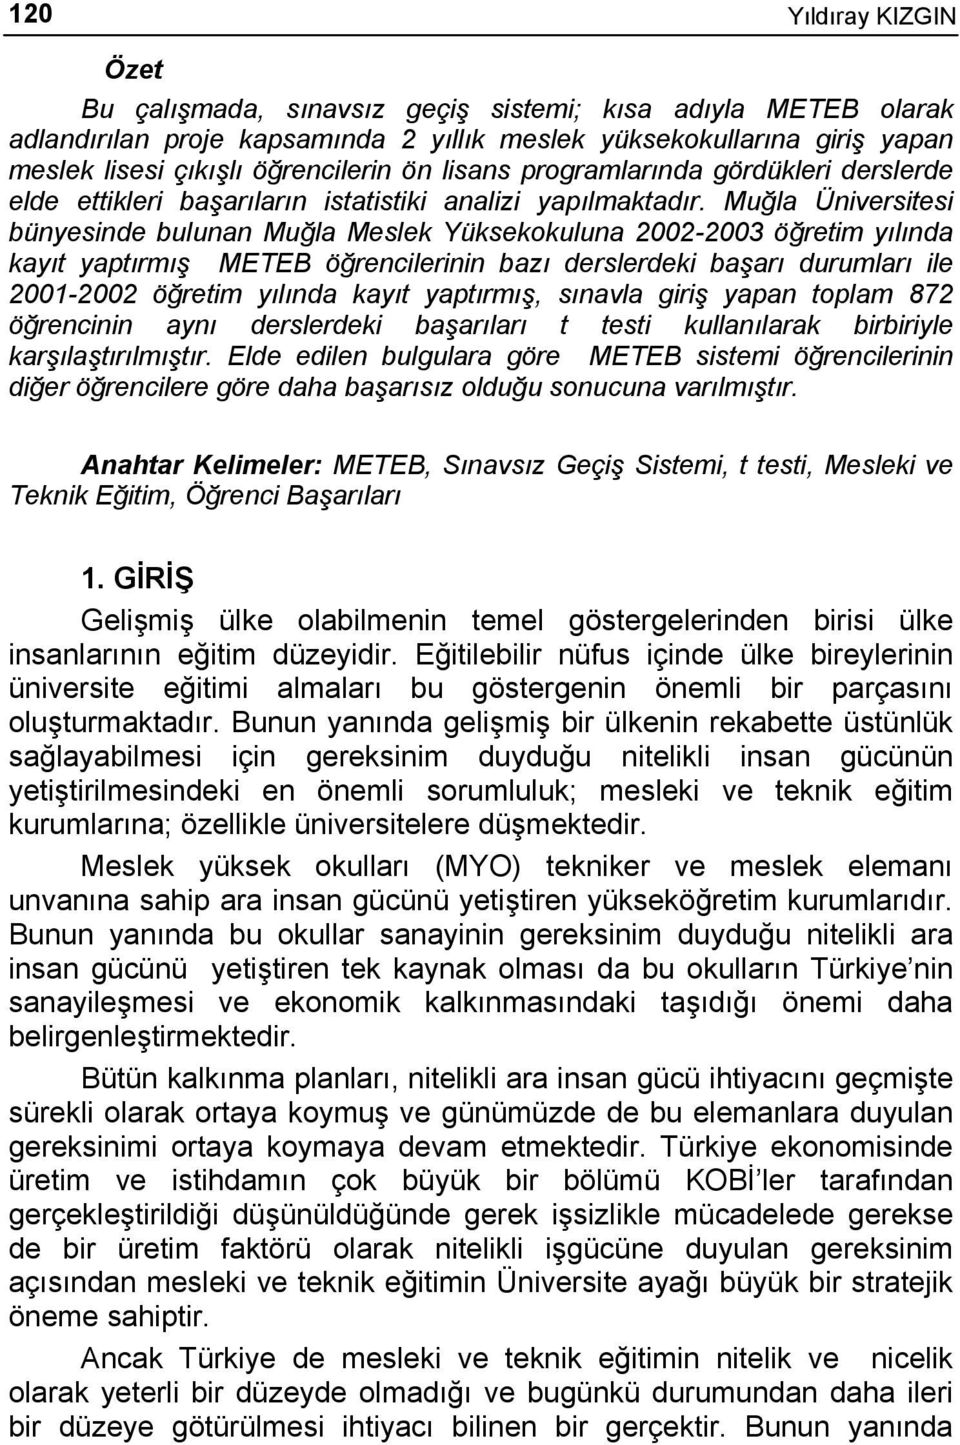 Muğla Üniversitesi bünyesinde bulunan Muğla Meslek Yüksekokuluna 2002-2003 öğretim yılında kayıt yaptırmış METEB öğrencilerinin bazı derslerdeki başarı durumları ile 2001-2002 öğretim yılında kayıt